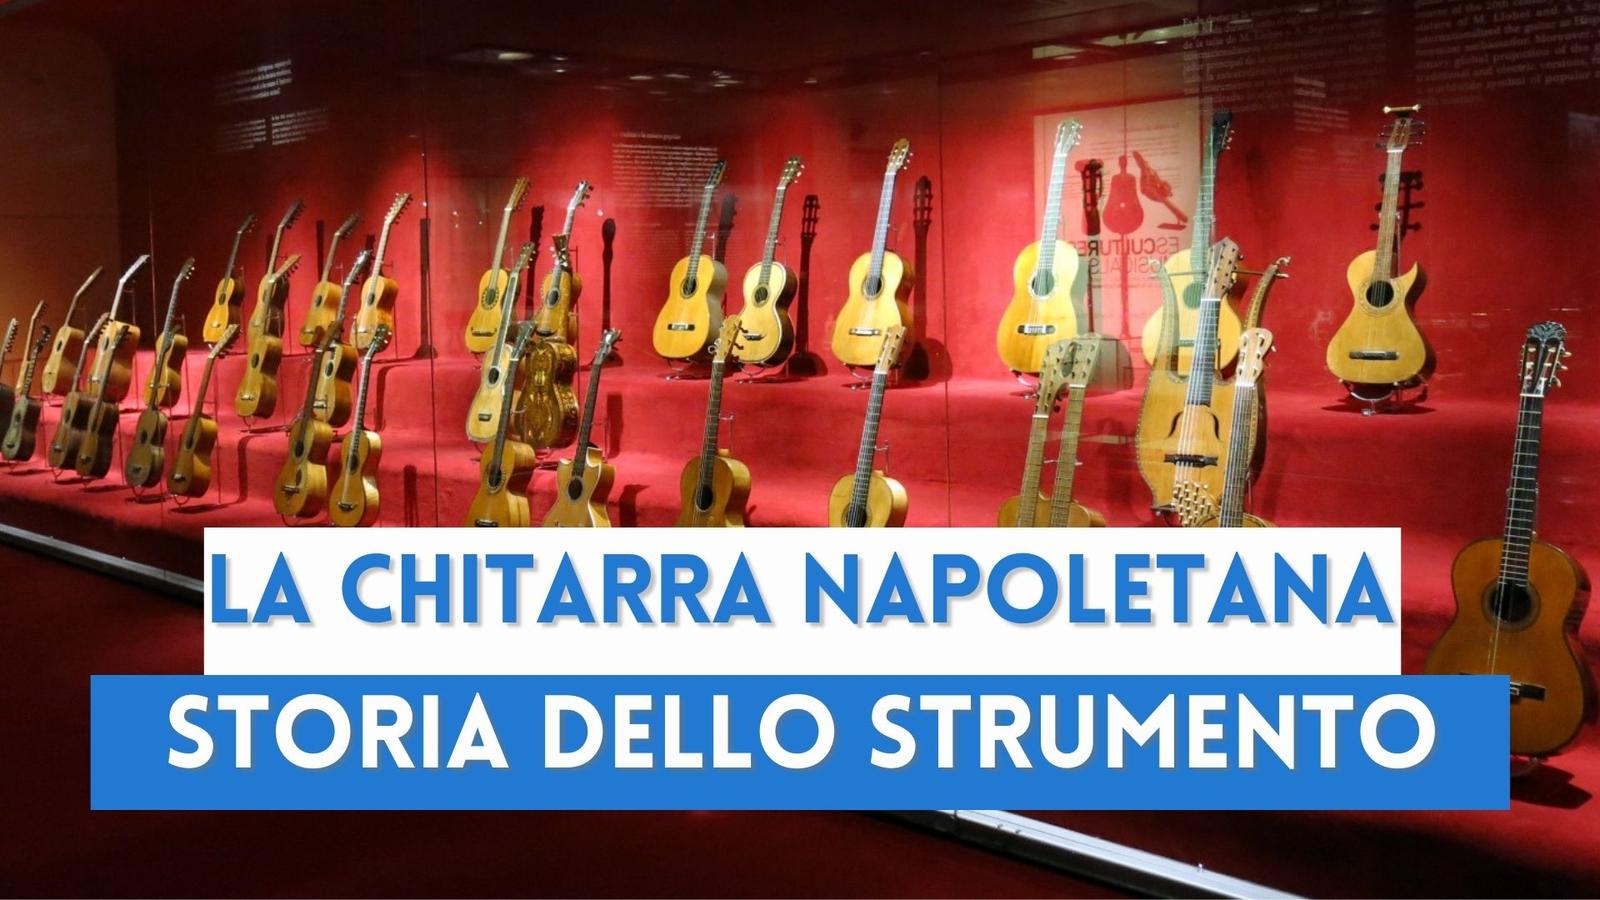 La chitarra a Napoli: uno strumento che ha fatto scuola